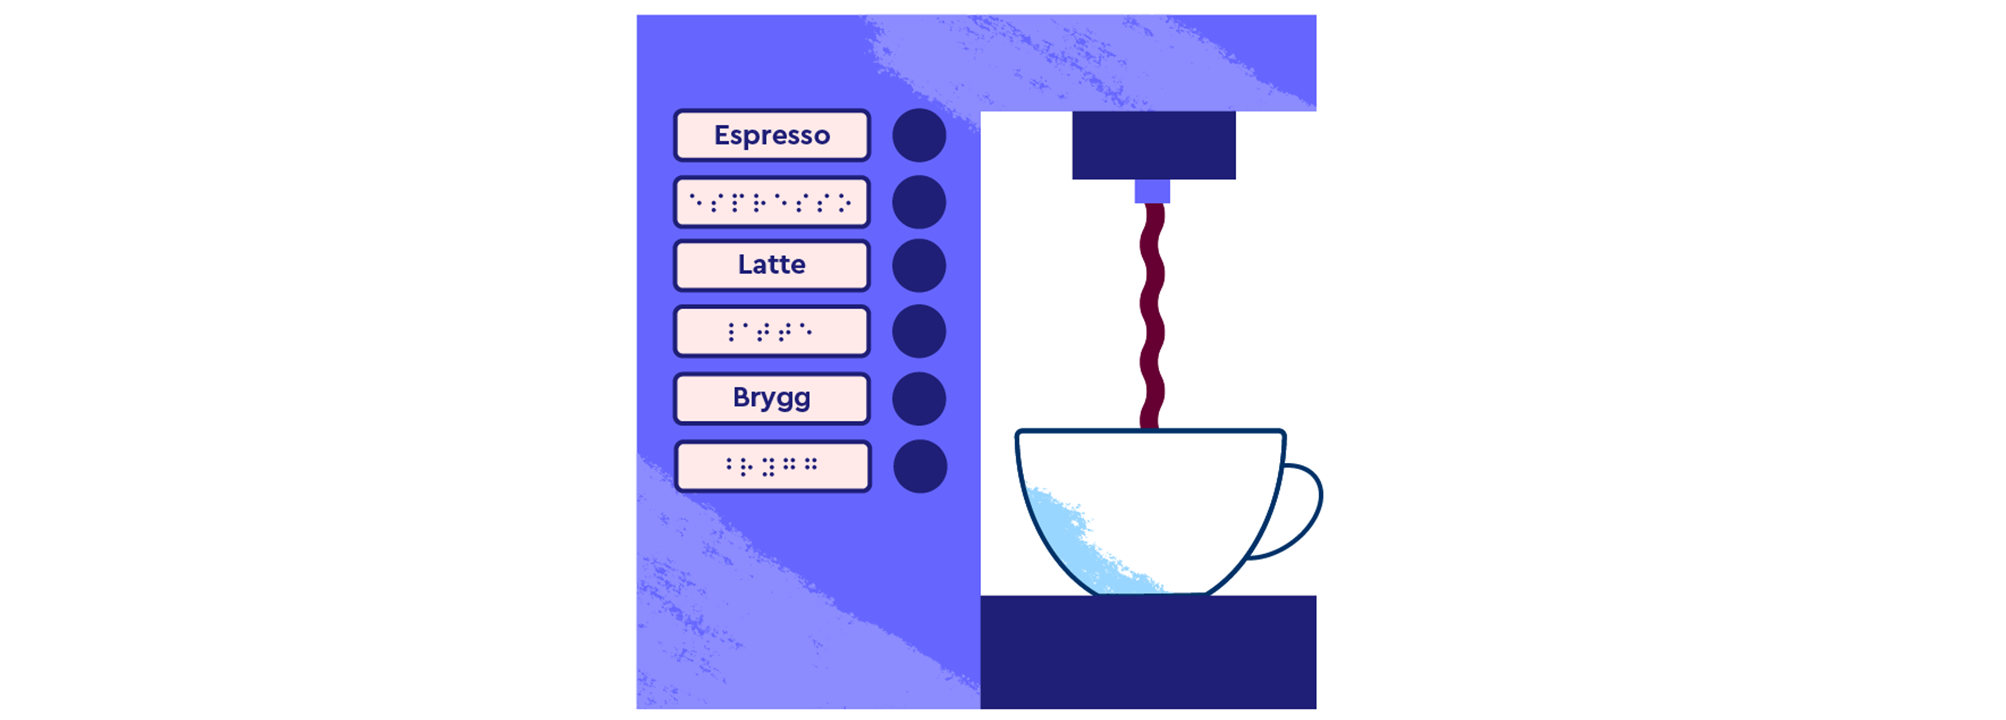 En kaffemaskin med tryckbara knappar för val av kaffe och en kopp. Det finns knappar i både svarttext och punkt.